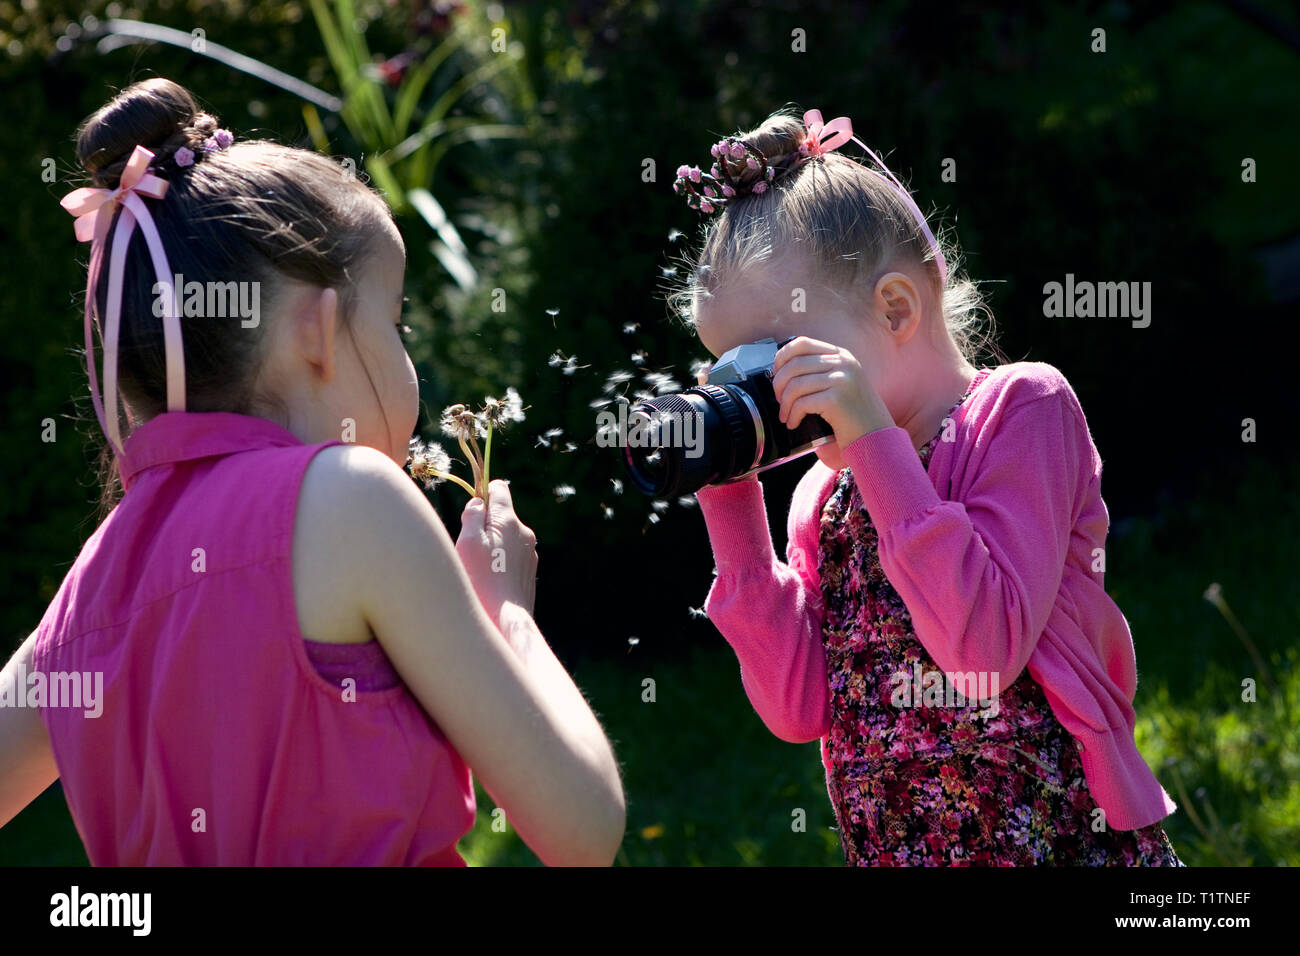 Enfant en utilisant une caméra pour prendre une photo d'un autre enfant blowing dandelion seeds dans un jardin Banque D'Images